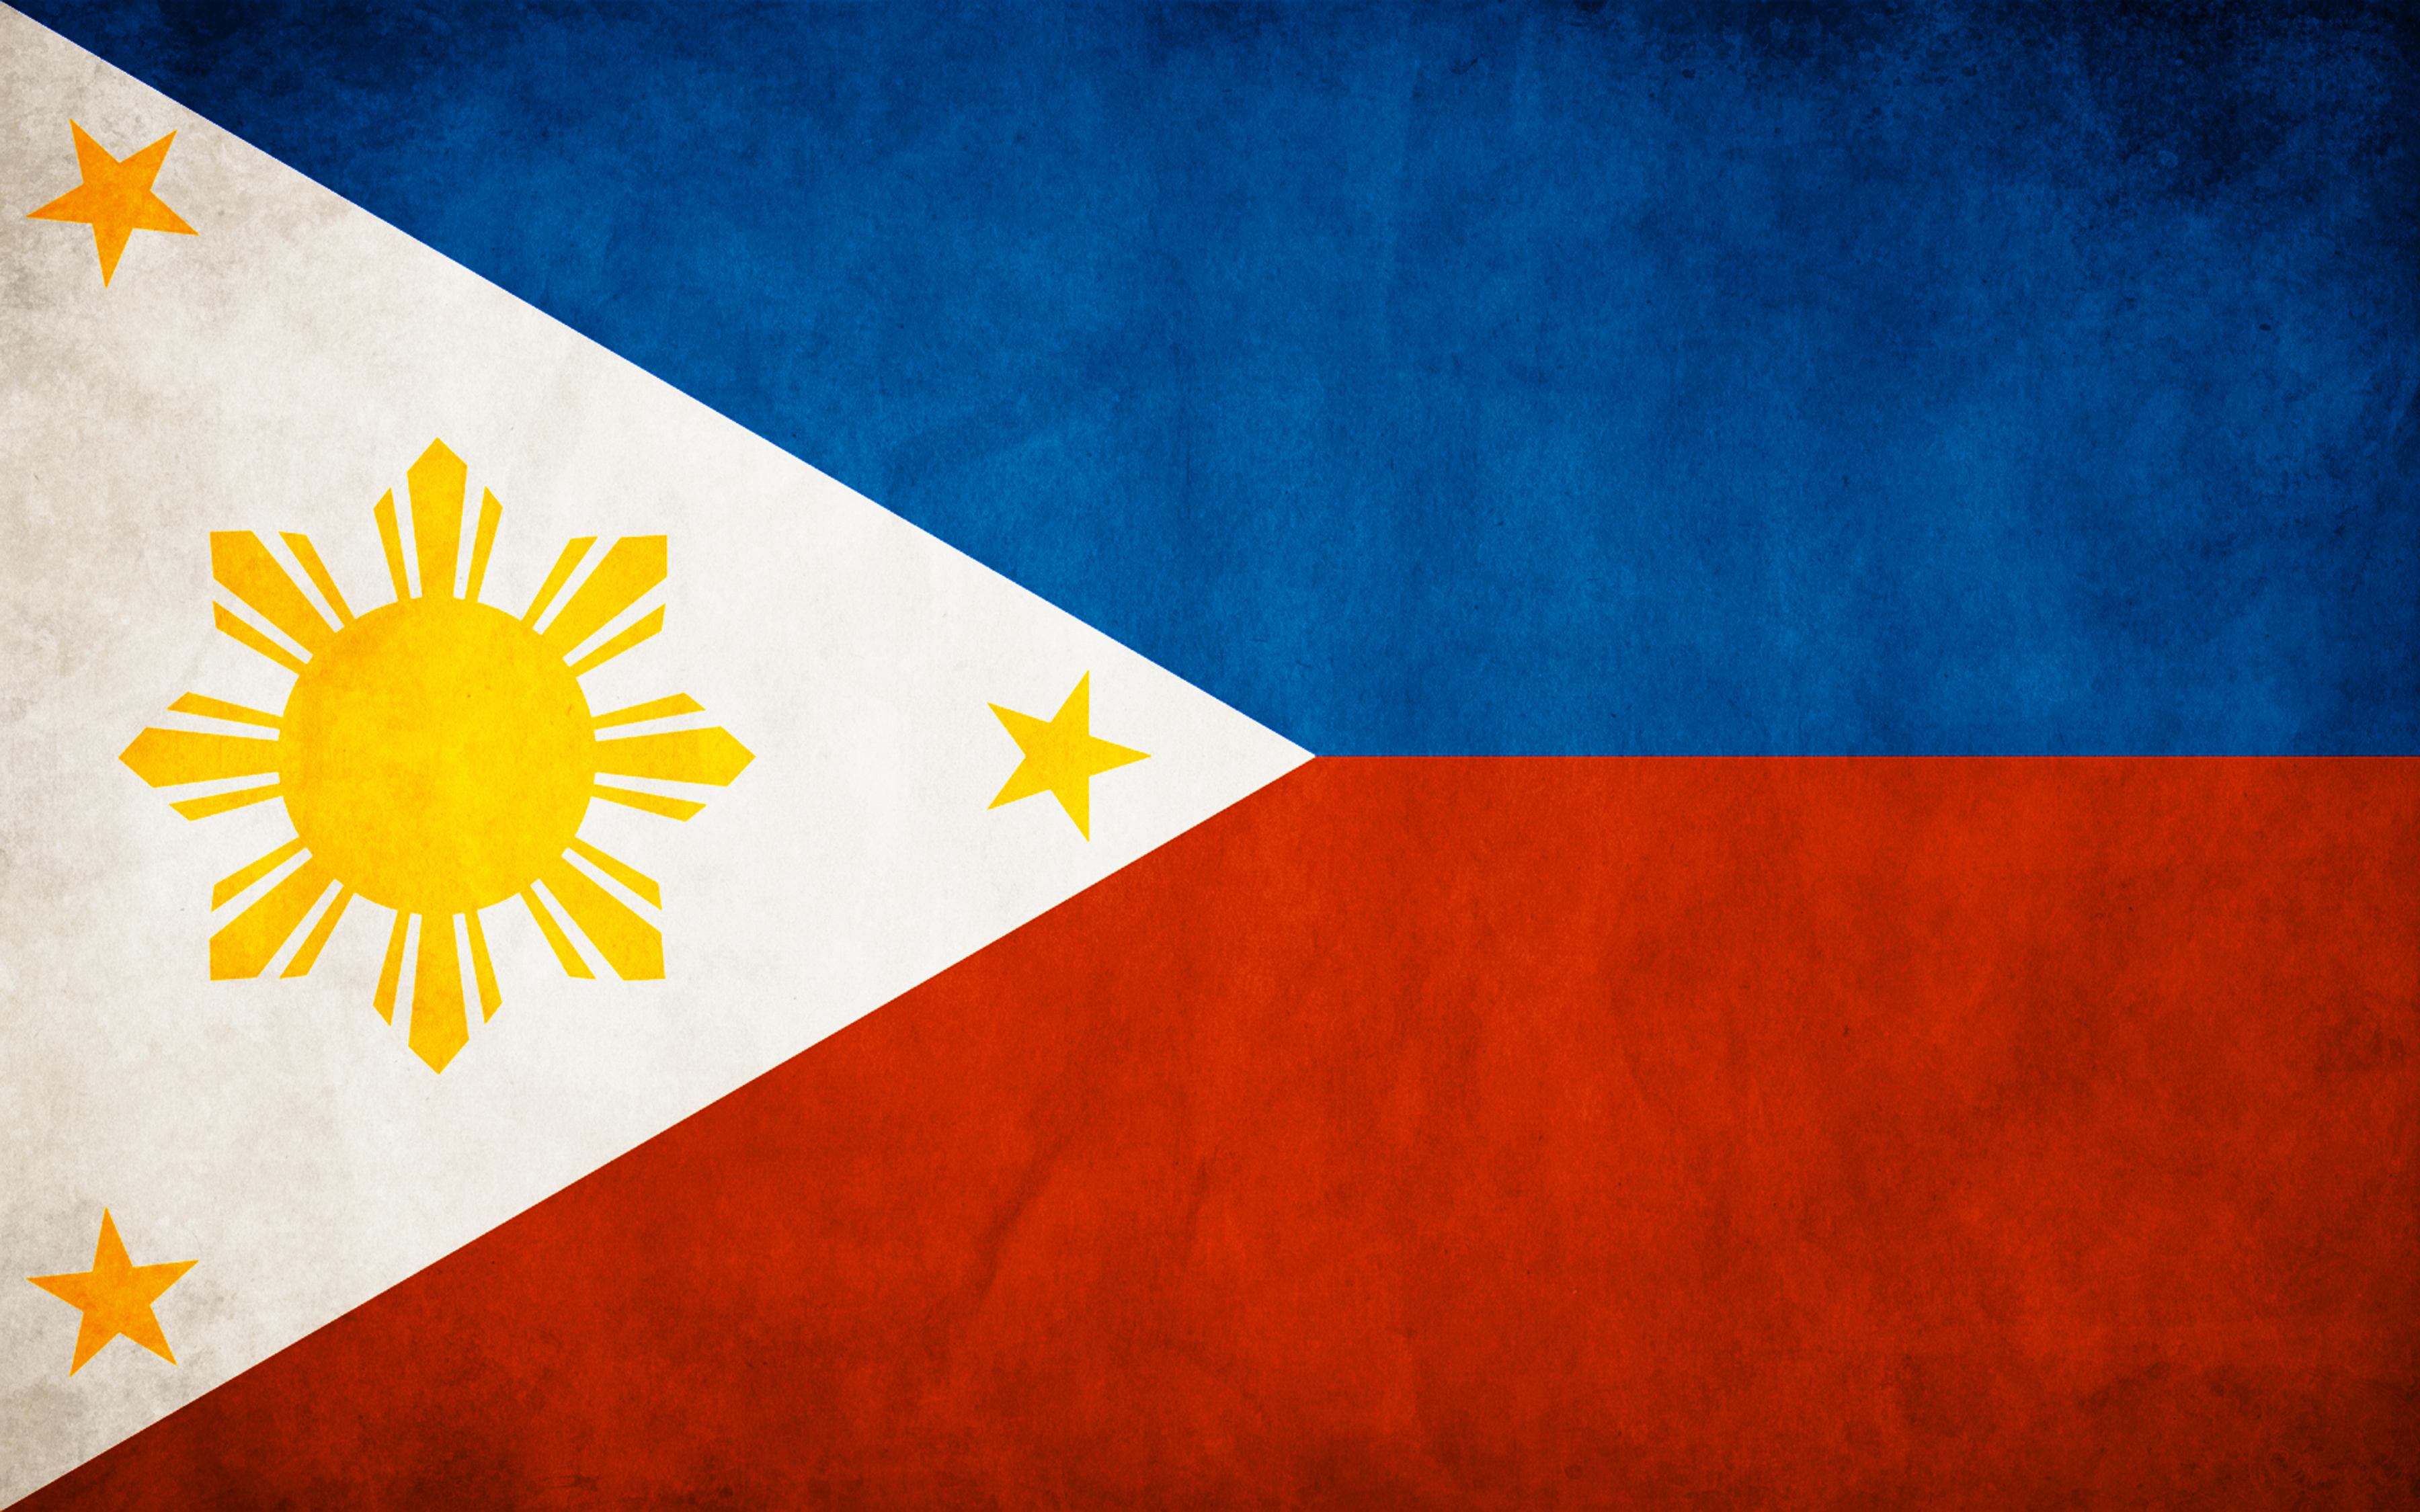 Скачать обои Флаг Филиппин на телефон бесплатно